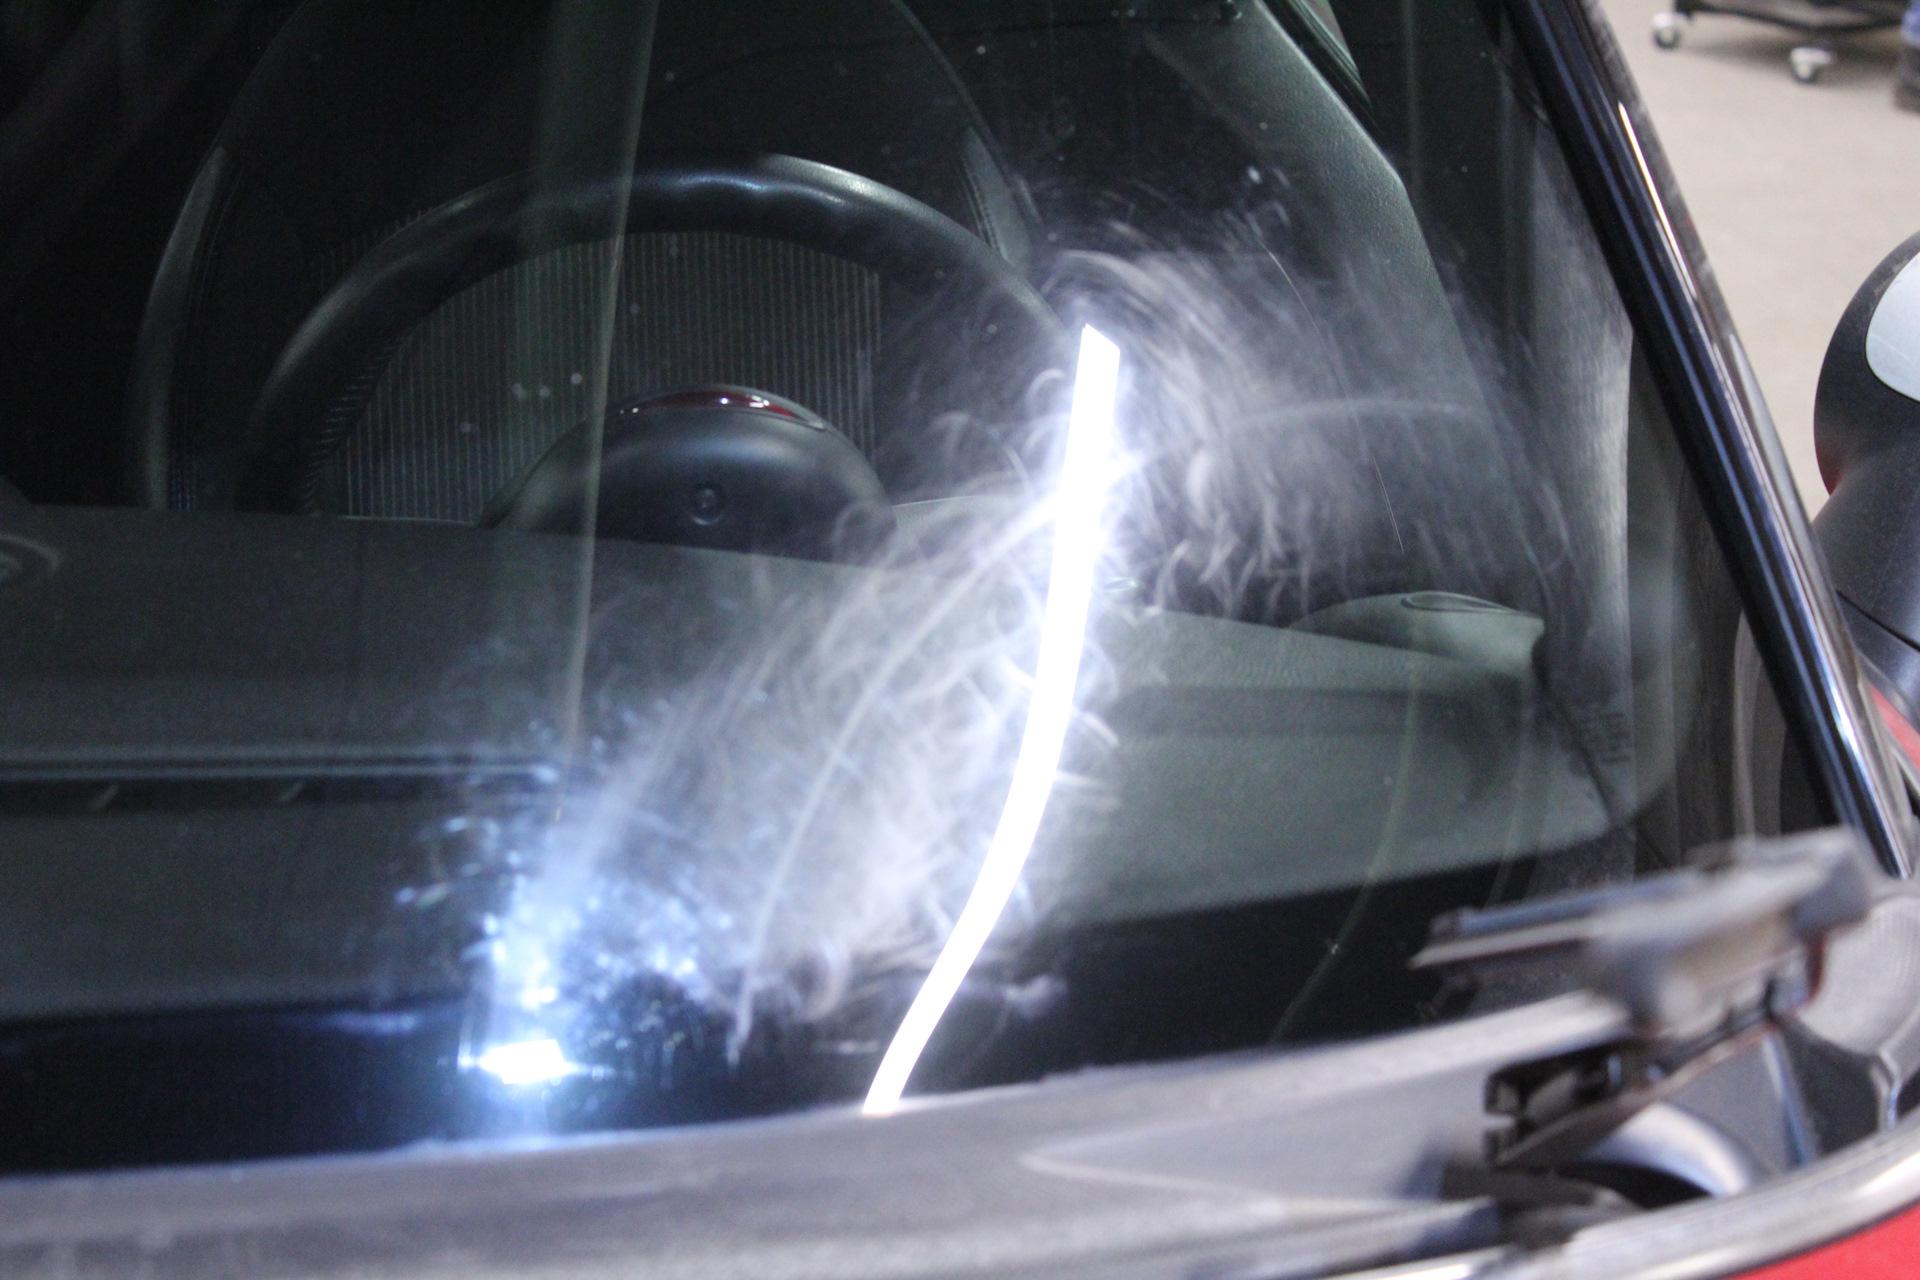 Удаление царапин на лобовом стекле автомобиля: Как убрать царапины на лобовом стекле автомобиля